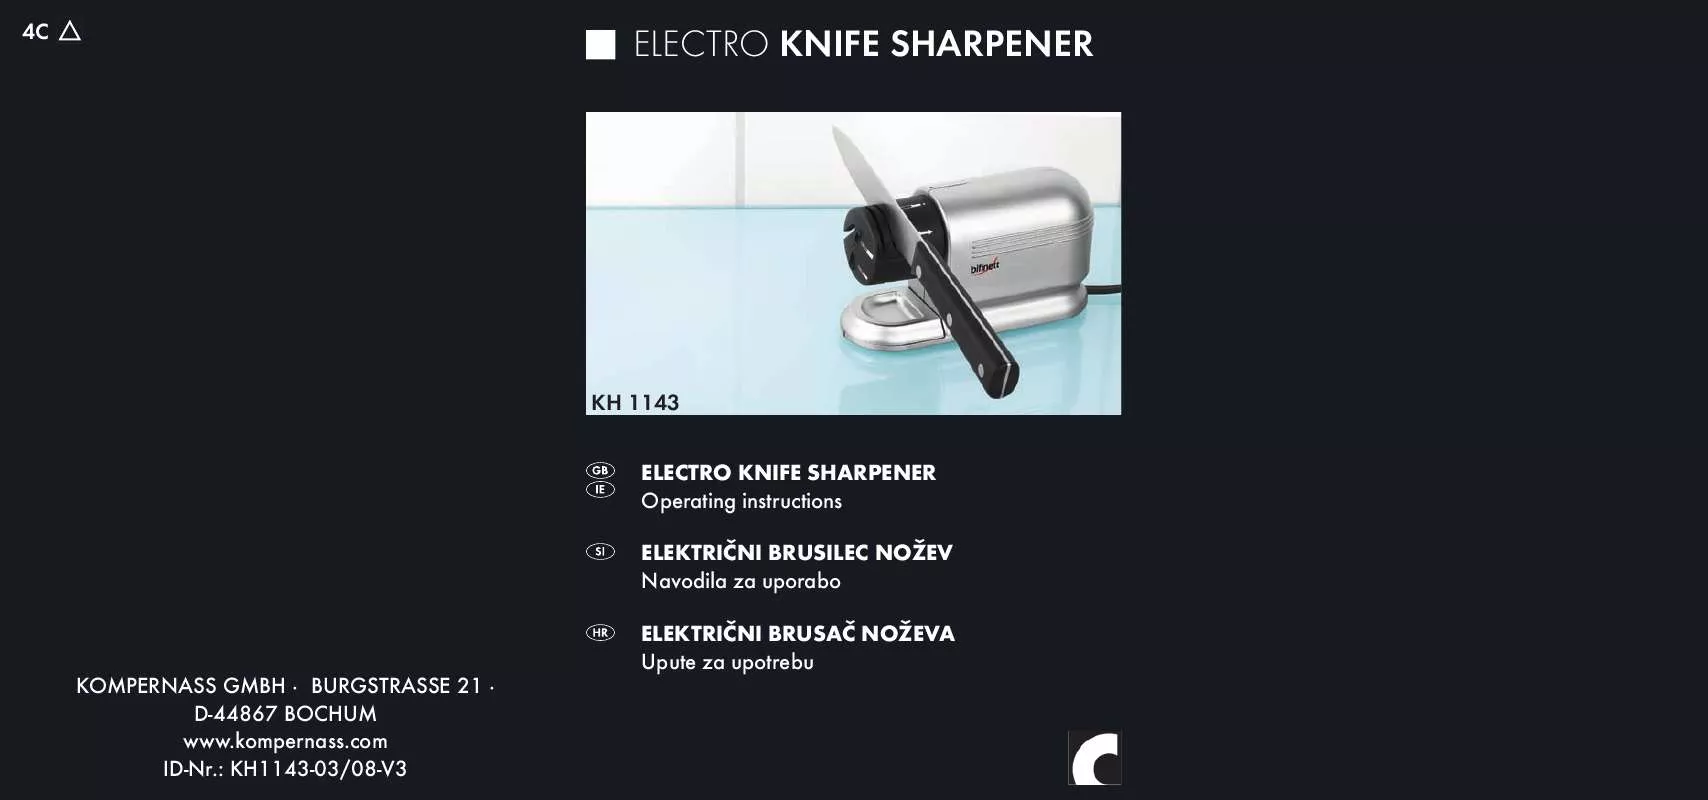 Mode d'emploi KOMPERNASS BIFINETT KH 1143 ELECTRO KNIFE SHARPENER